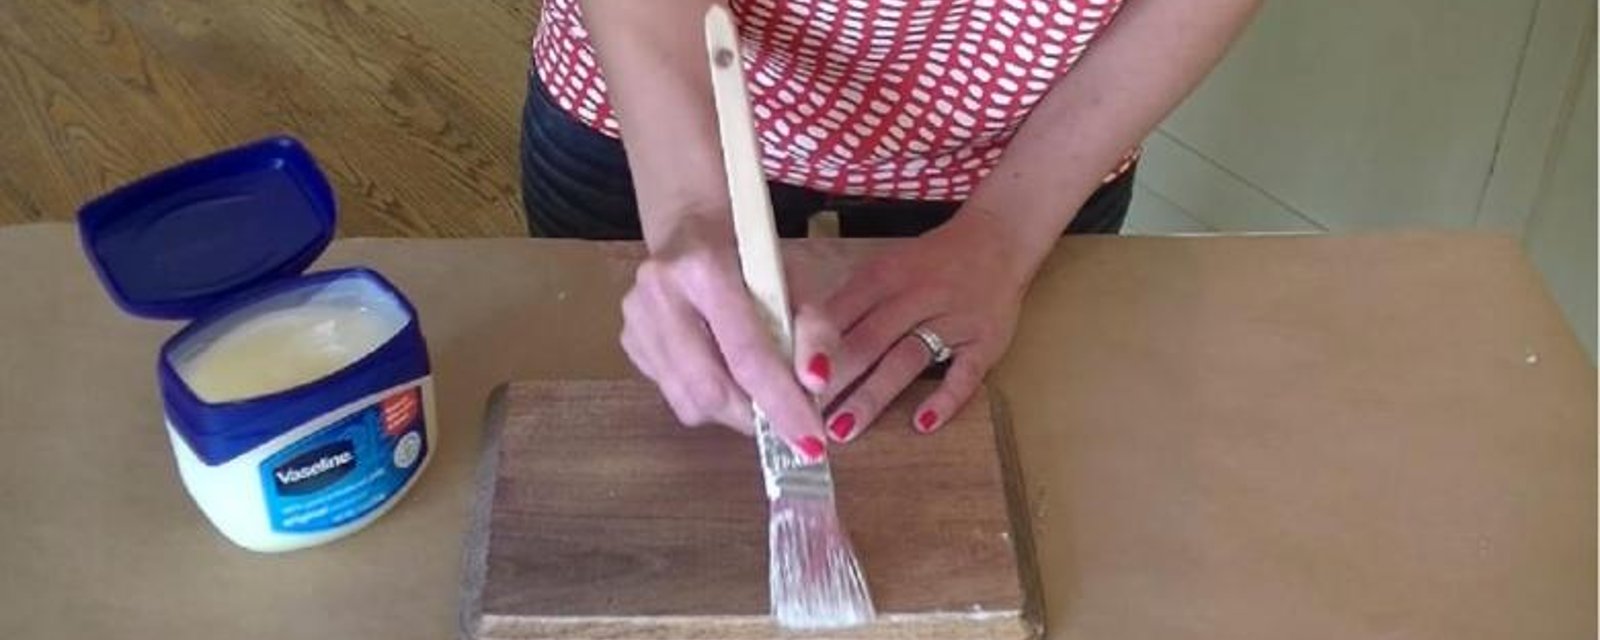 En appliquant de la Vaseline sur du bois, elle réalise une technique de peinture incroyable! 